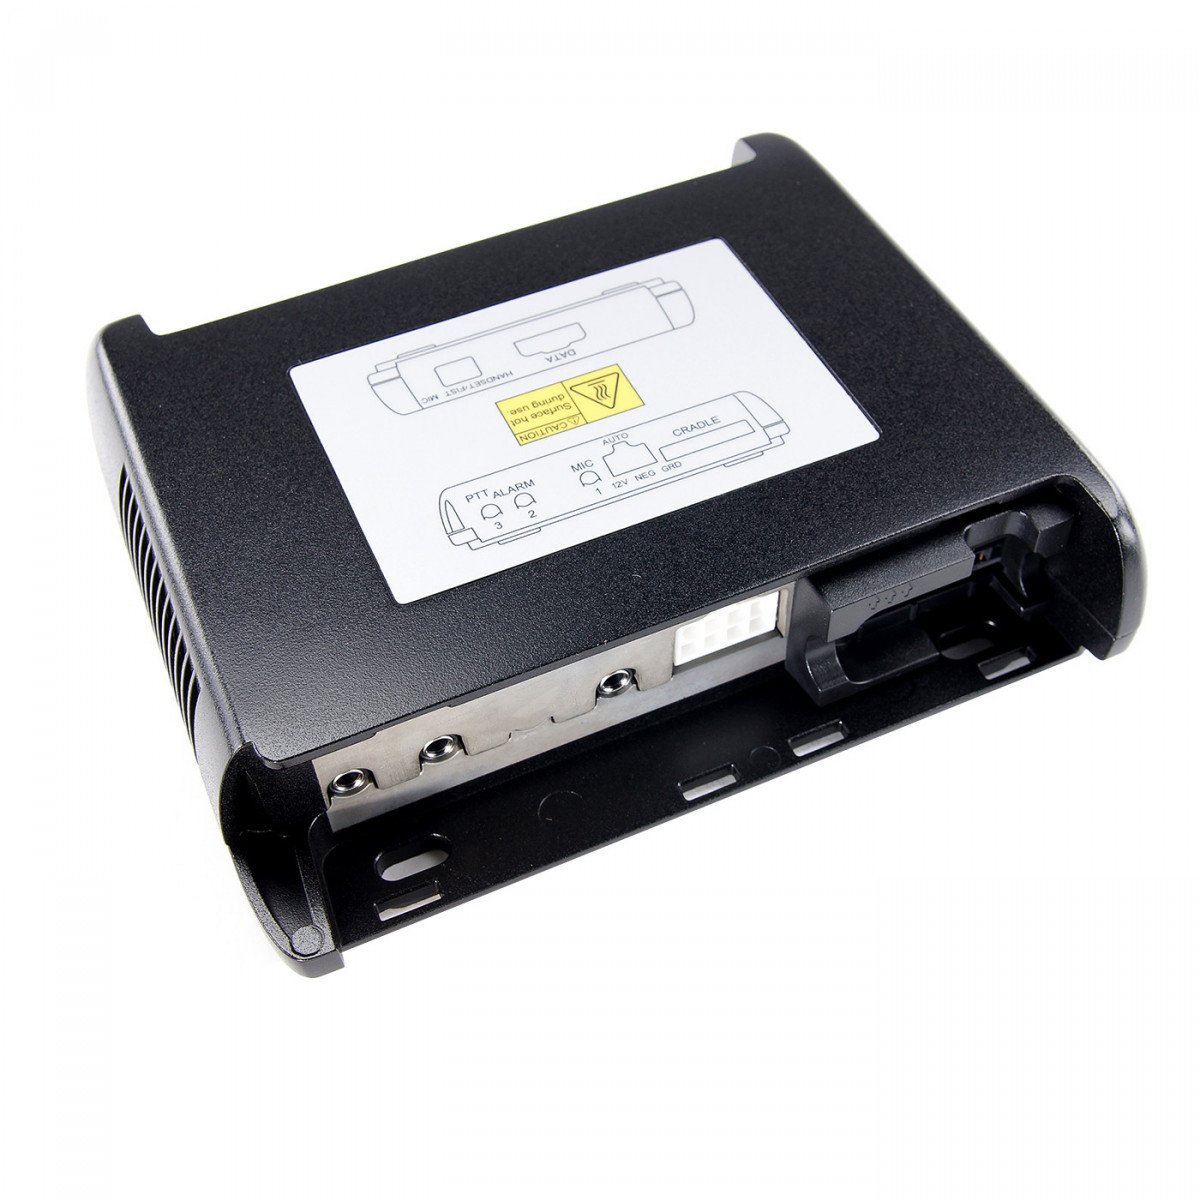 SEPURA Kfz-Ladehalterung aktiv 12V für STP8/9000 mit RFID Chip, OHNE Audiozubehör B16845 300-00797